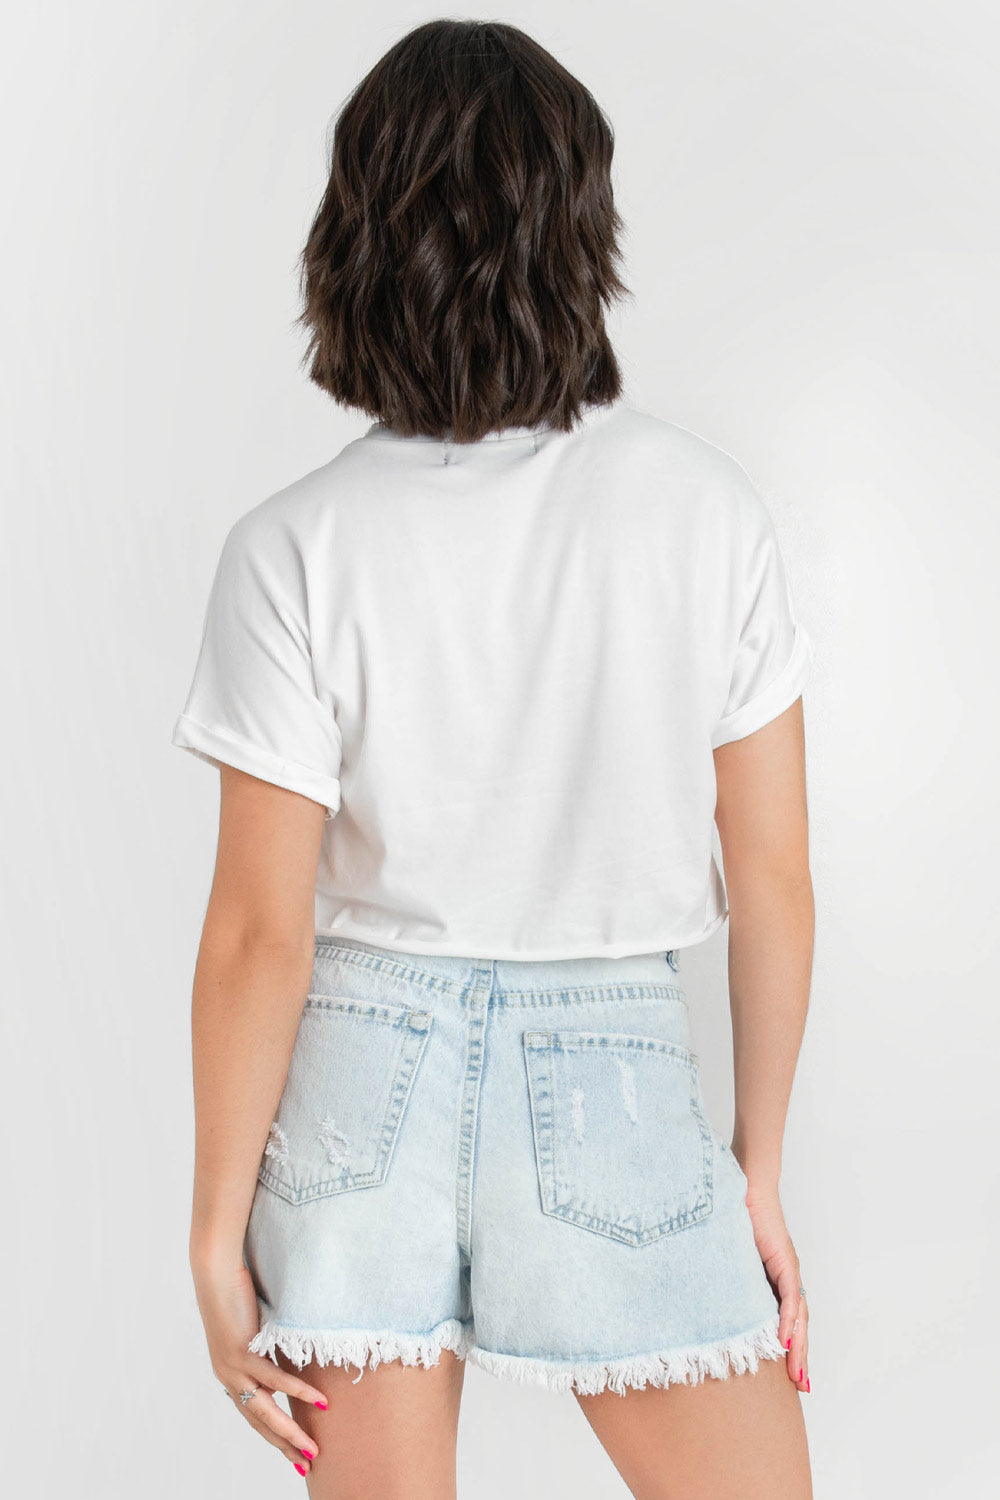 Camiseta de cuello redondo, manga corta con doblez en borde y fit recto. Detalle de bajo y mangas sin costura.